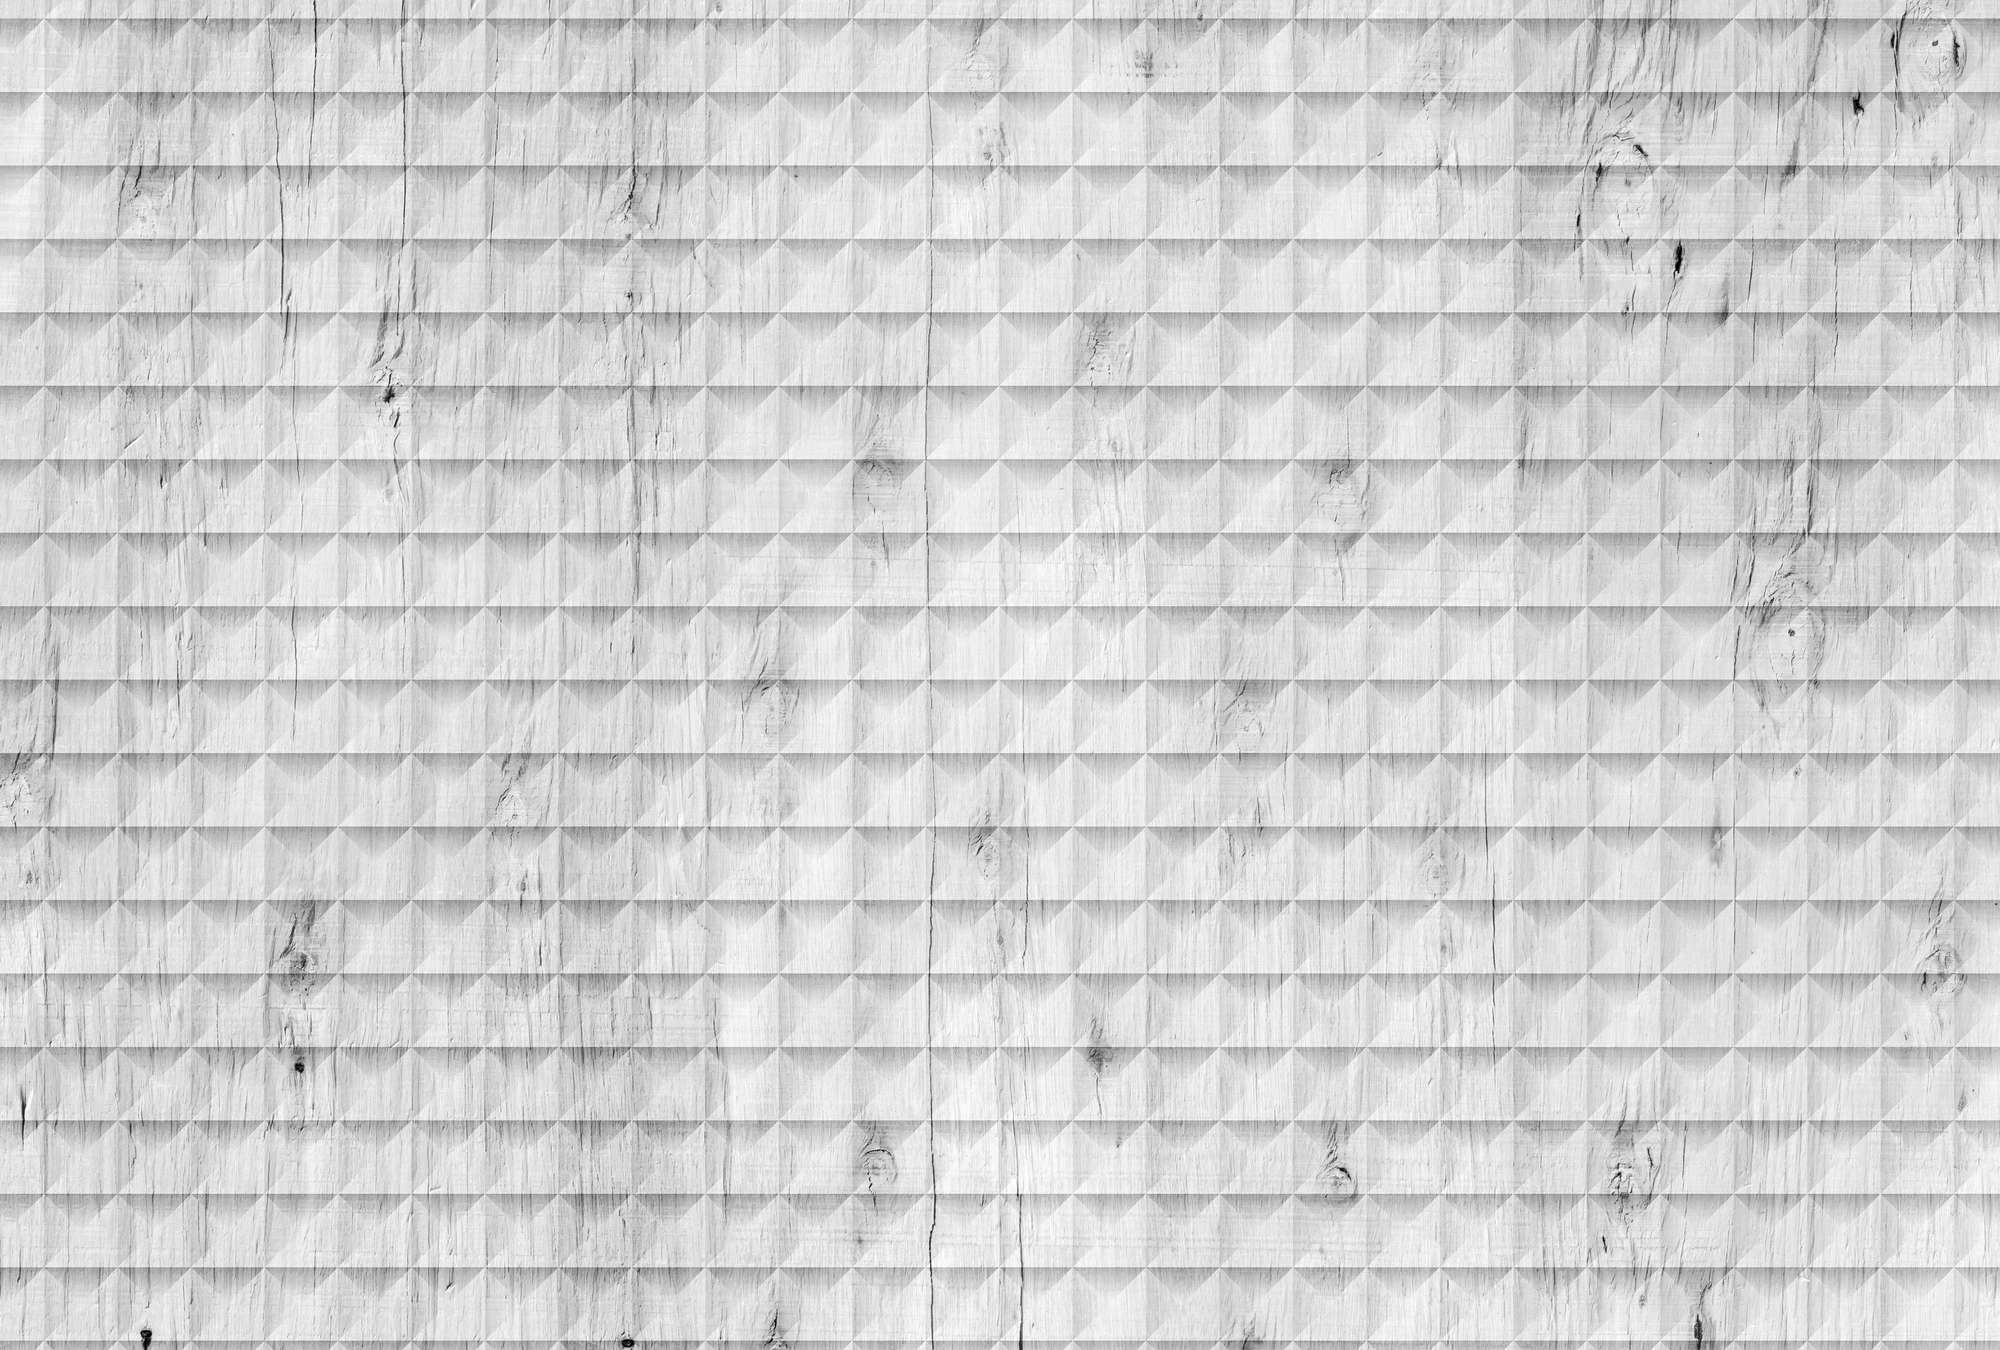             Carta da parati in legno bianco, venature e motivi geometrici - Bianco, grigio, nero
        